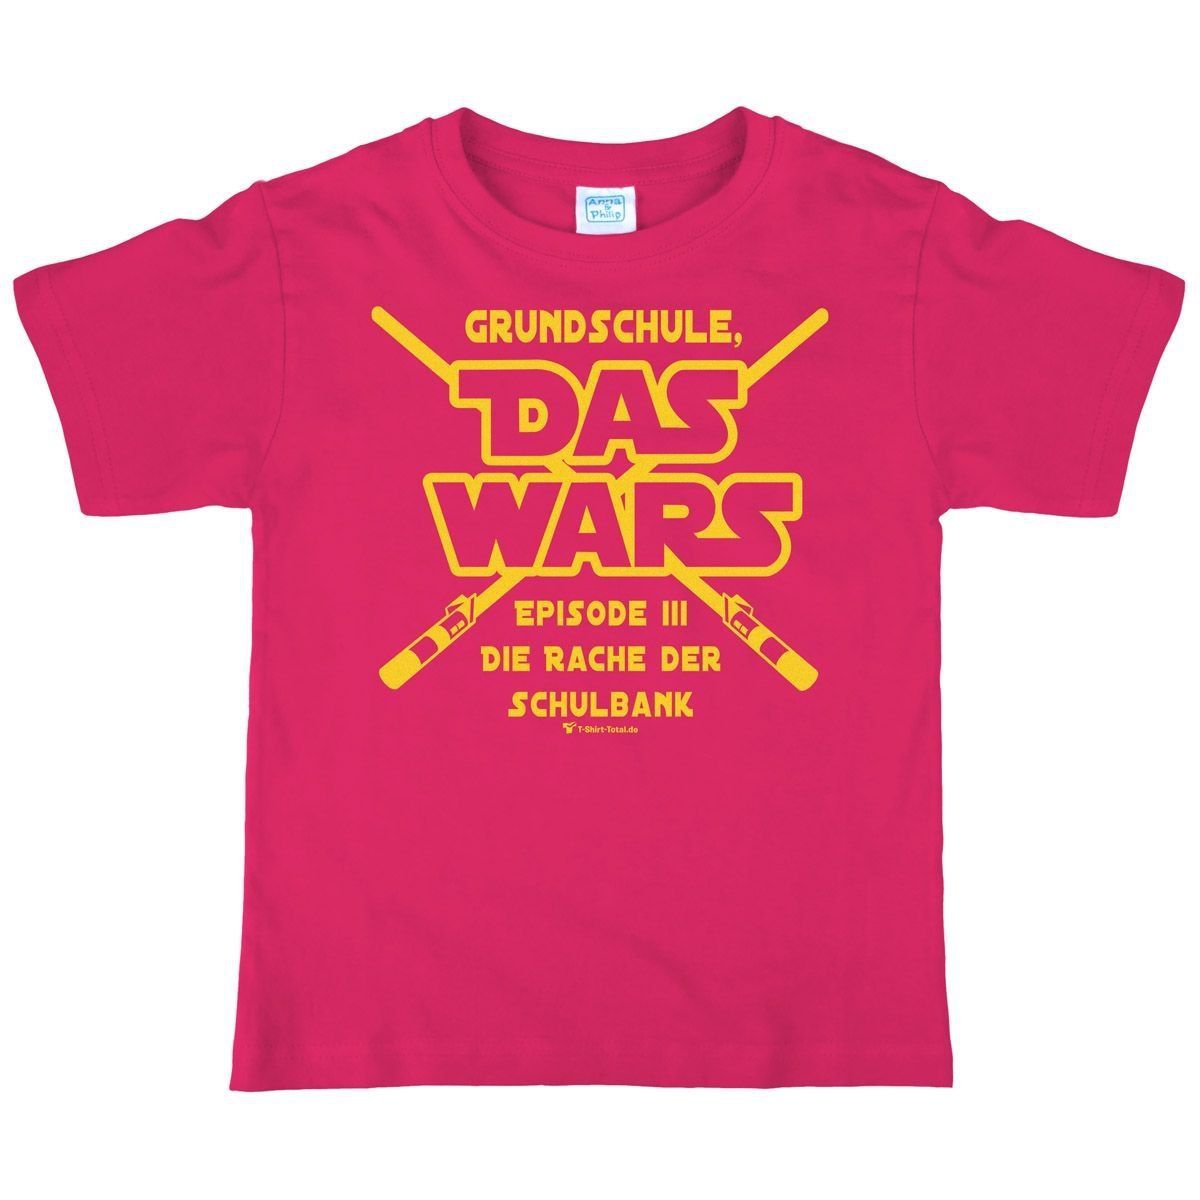 Das wars Grundschule Kinder T-Shirt pink 134 / 140